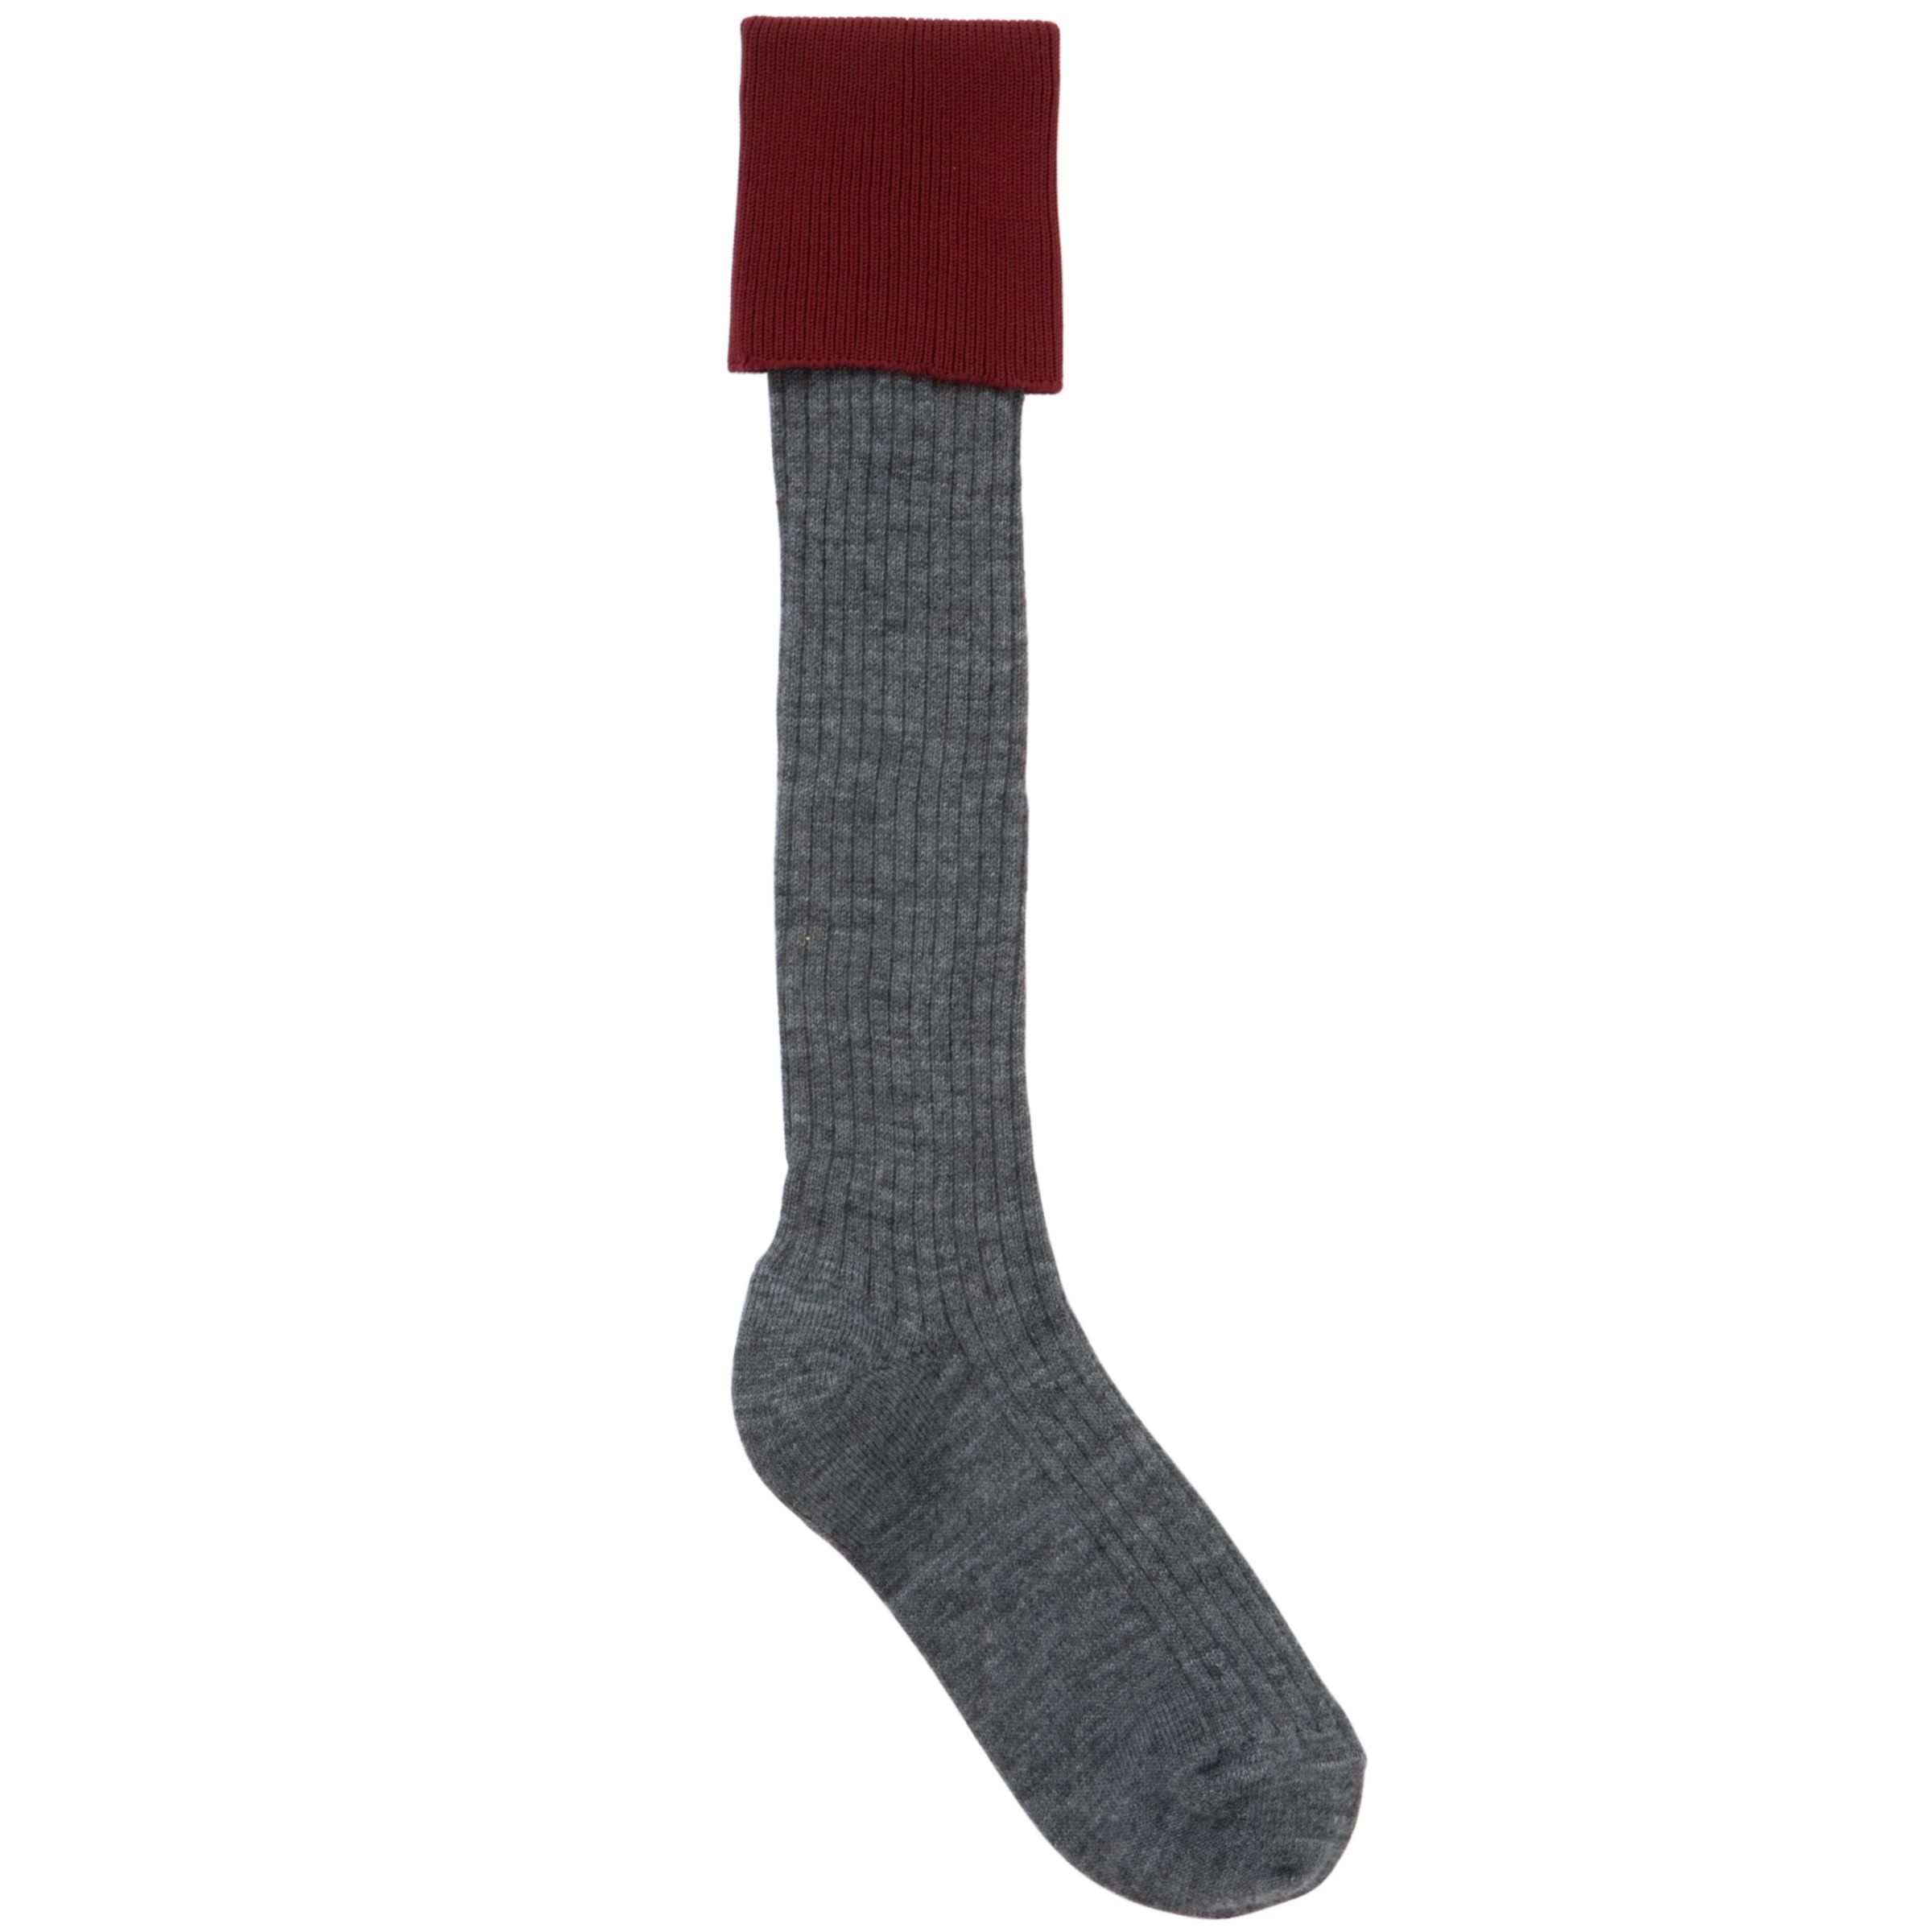 Buy School Unisex Day Socks, Pack Of 2, Grey/Maroon | John Lewis